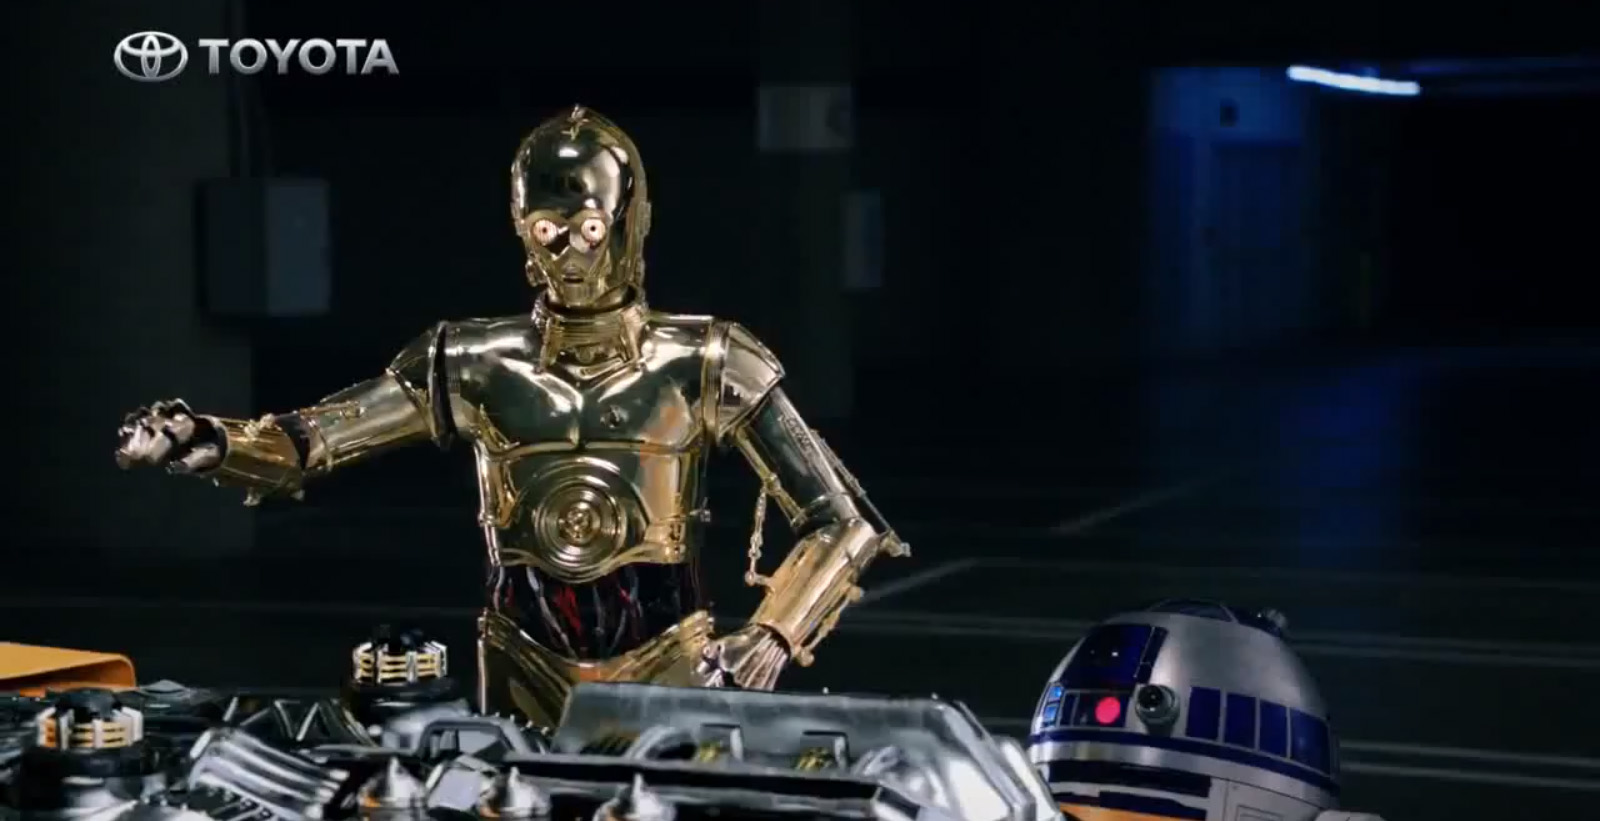 Still of Chris F. Bartlett as C-3PO for Toyota